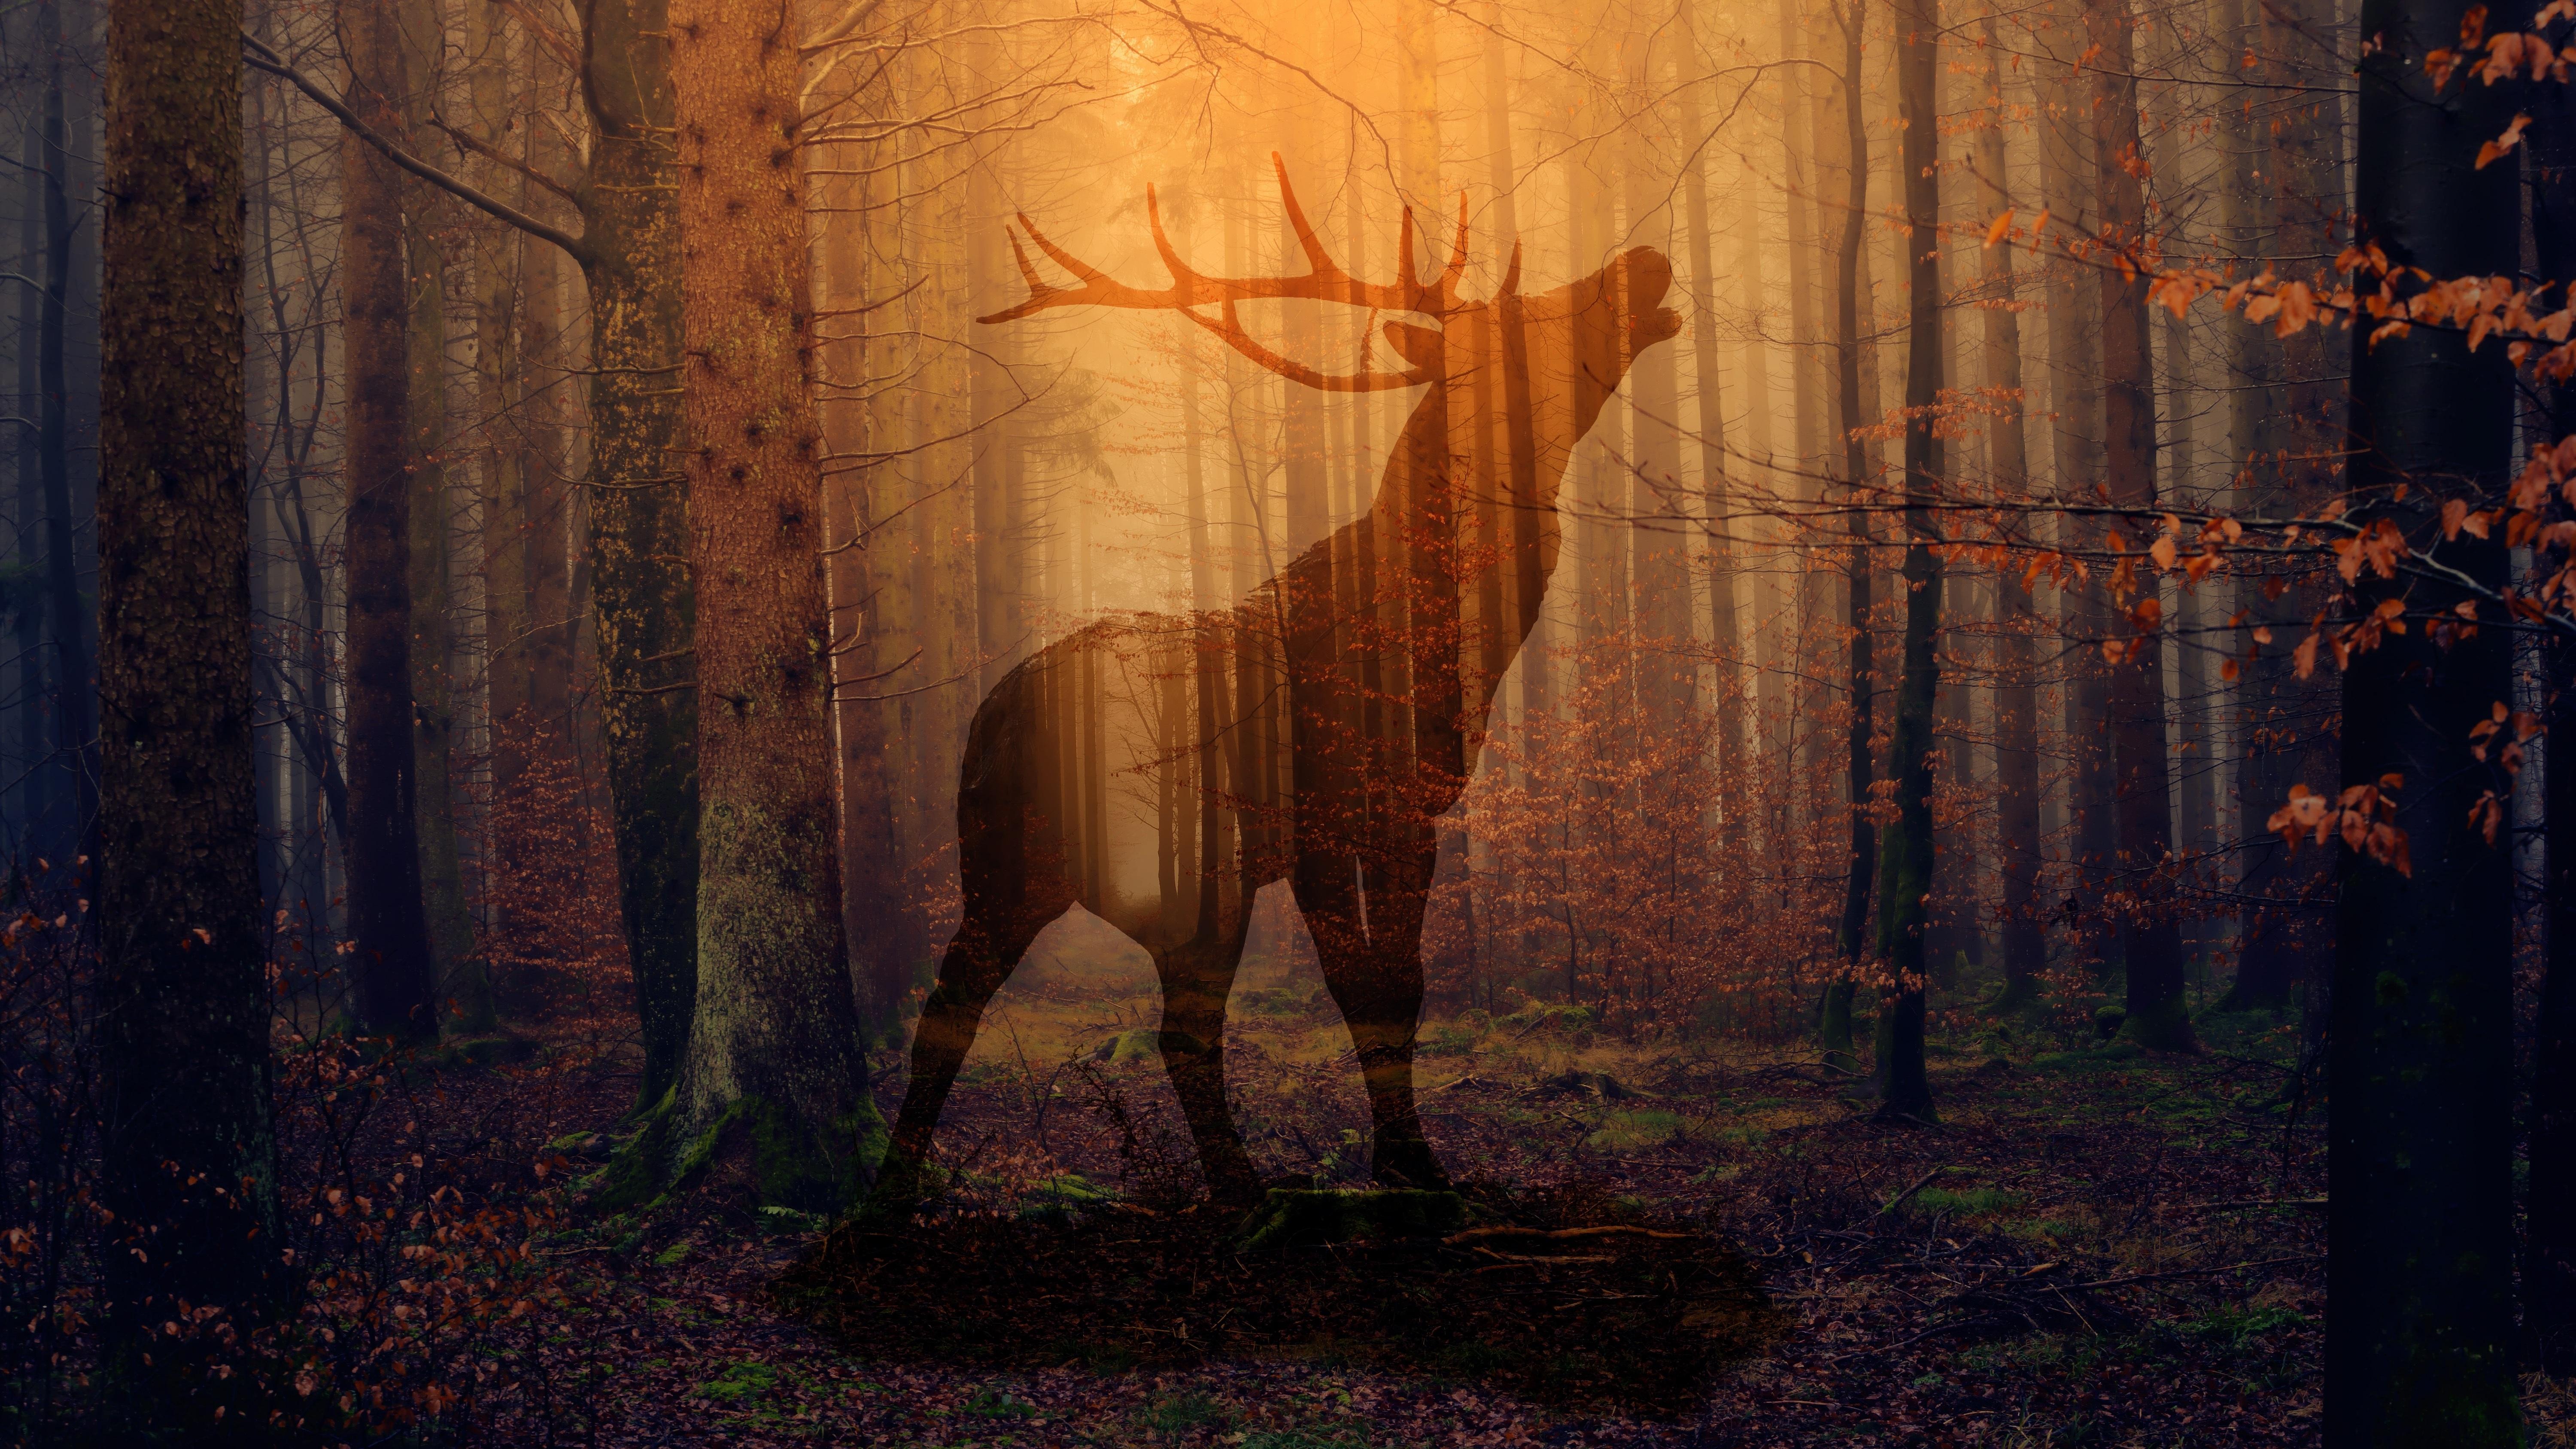 Download wallpaper 6000x3375 deer, forest, fog, silhouette, autumn